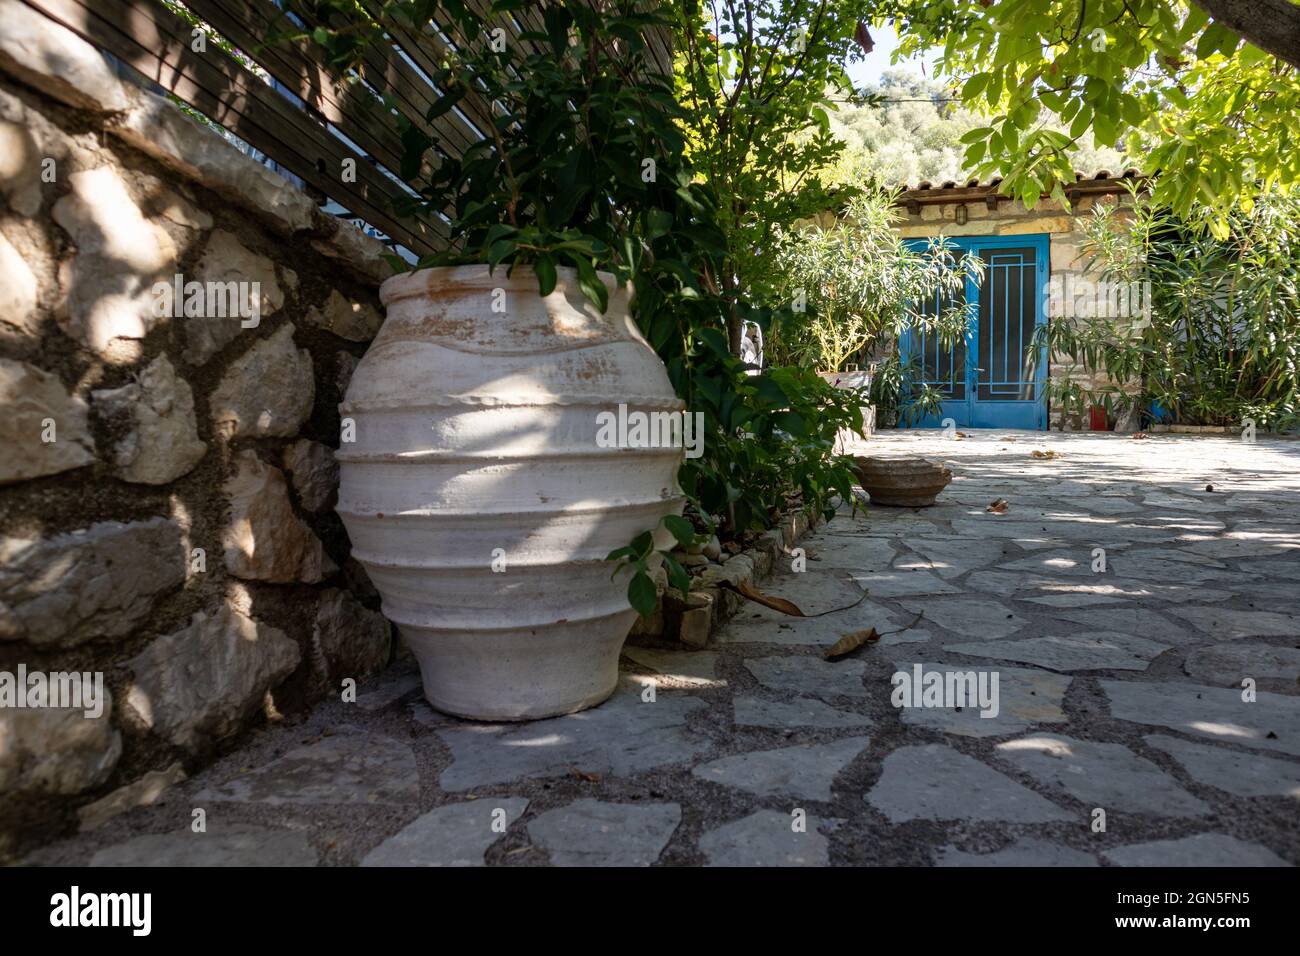 Grand vase de fleur en vert ensoleillé été dans la cour traditionnelle grecque avec des murs en pierre et des volets de portes bleues. Détails de l'architecture des lieux de voyage d'été Banque D'Images